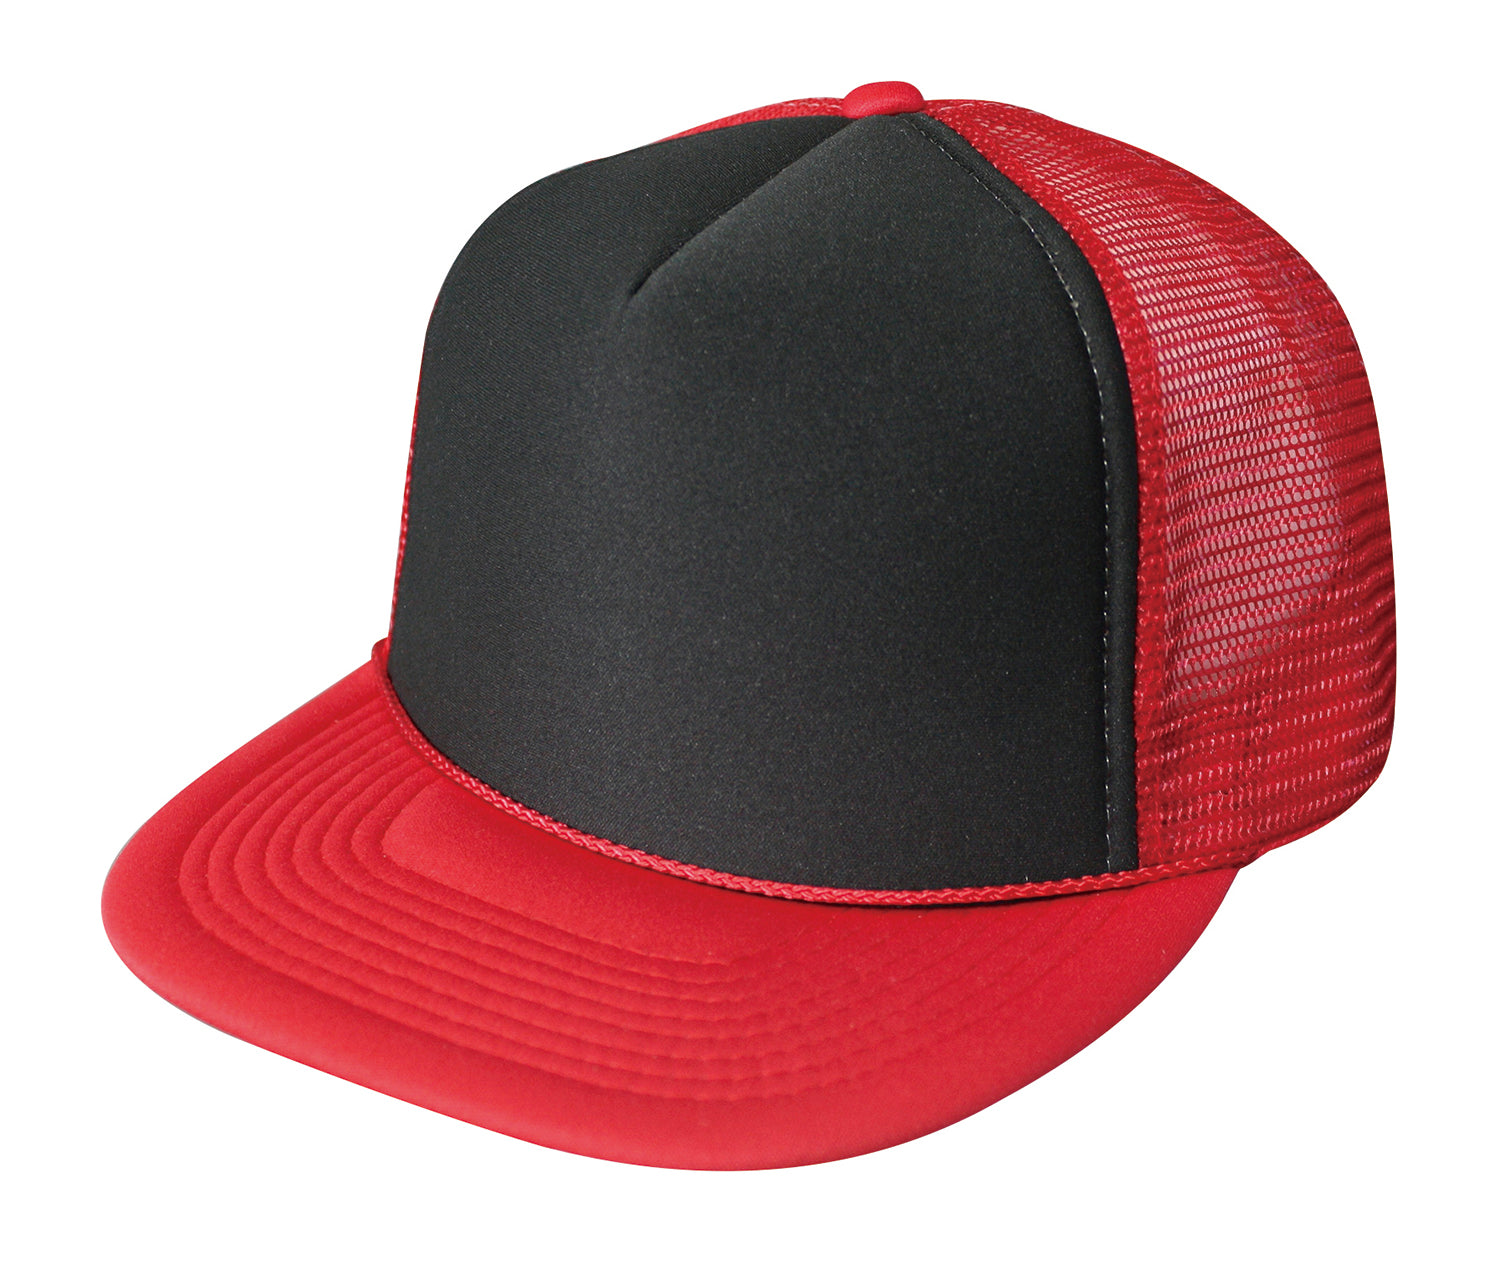 Red-Black color variant